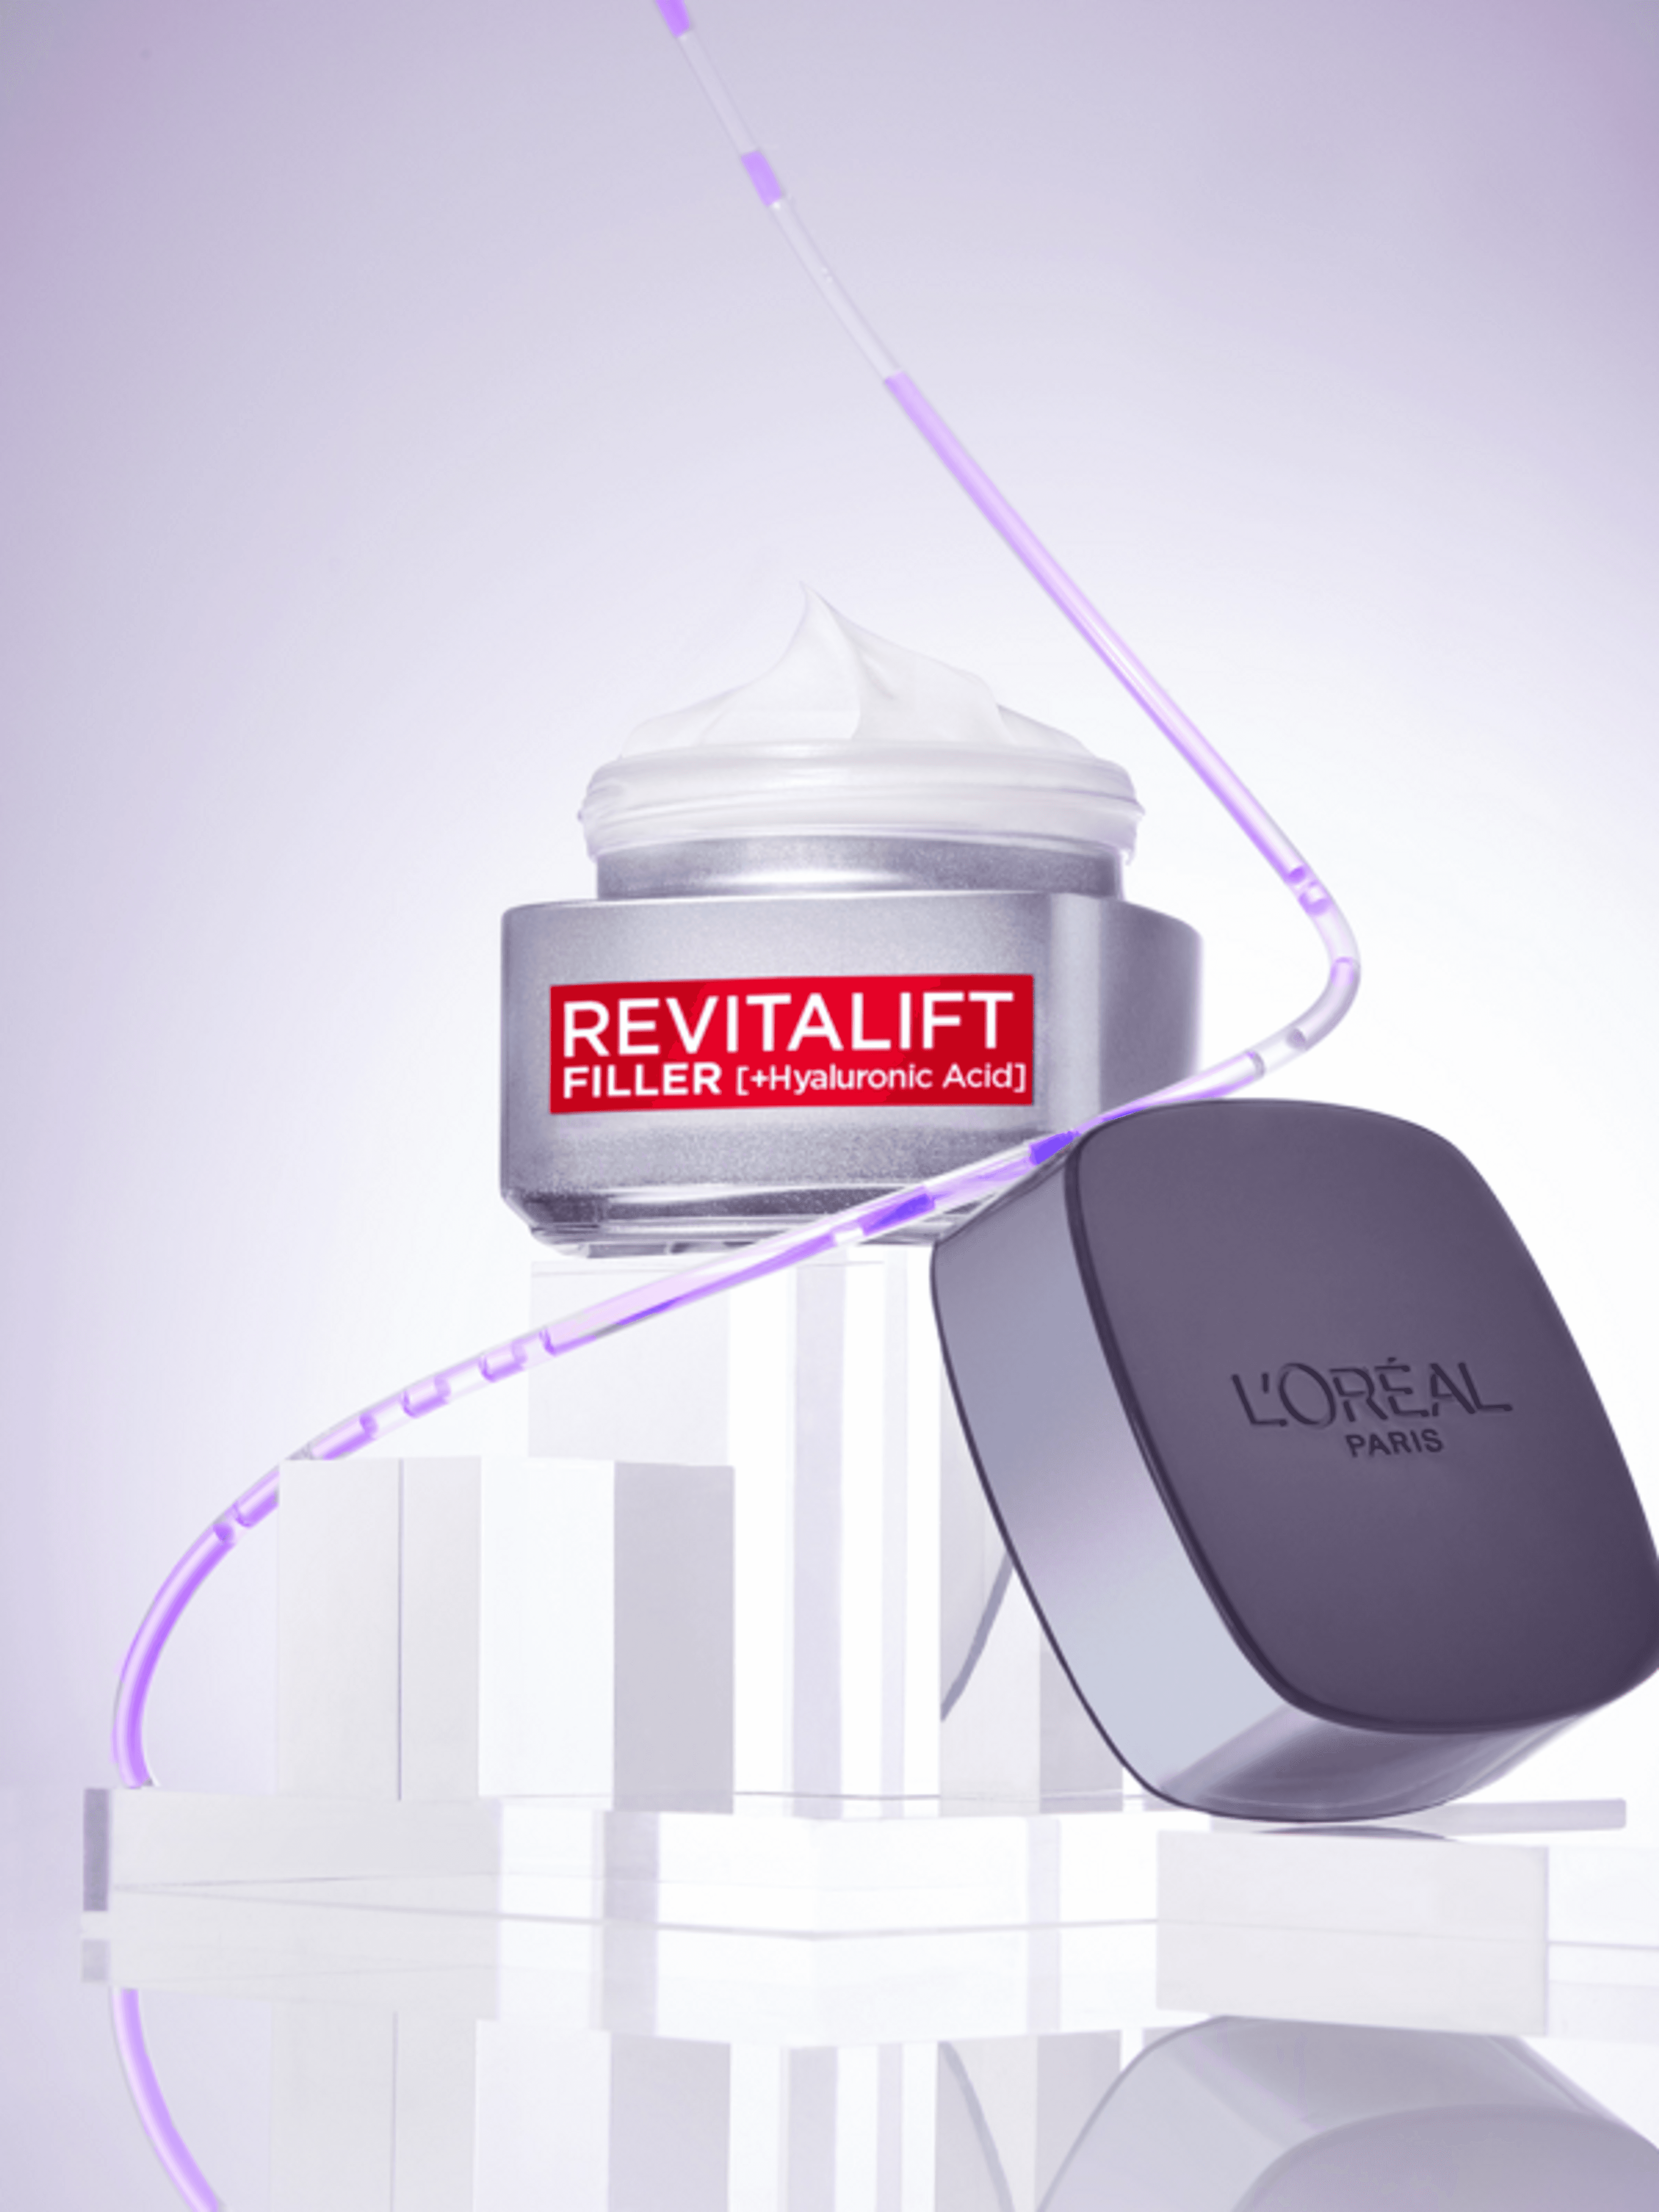 L'Oréal Paris Revitalift Filler ránctalanító,feltöltő nappali krém hialuronsavval 50ml - 1 db-6